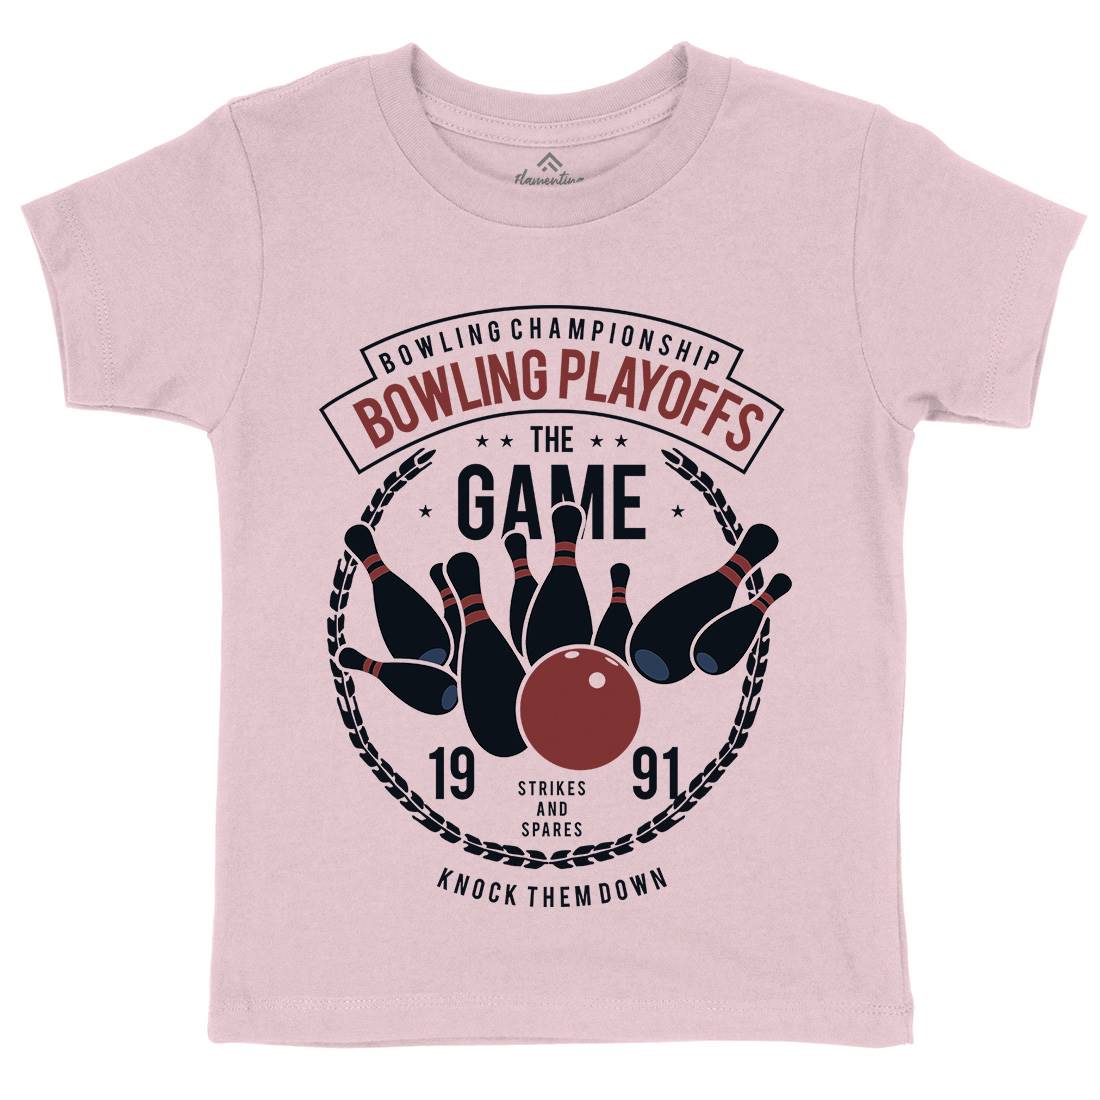 Bowling Playoffs Kids Crew Neck T-Shirt Sport B384